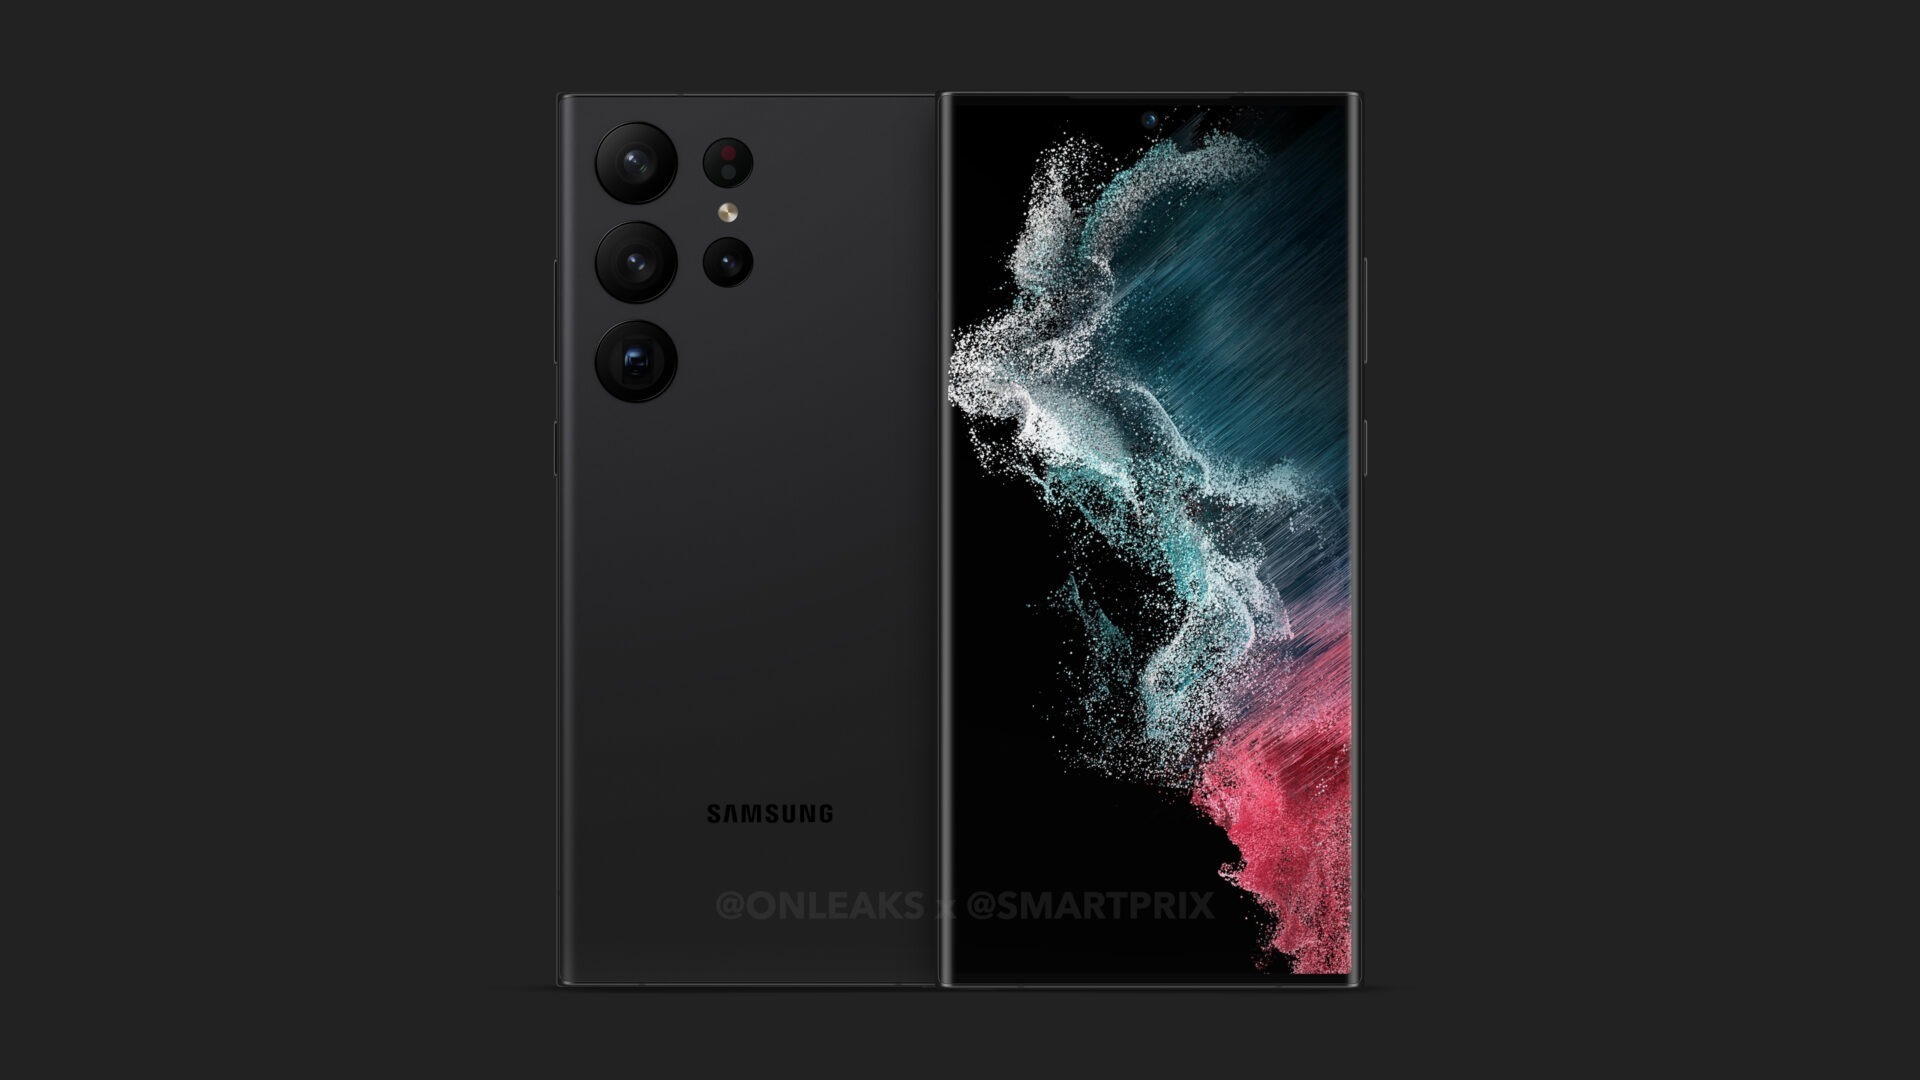 Imagem vazada mostra visual do Galaxy S23, próximo smatphone flagship da Samsung